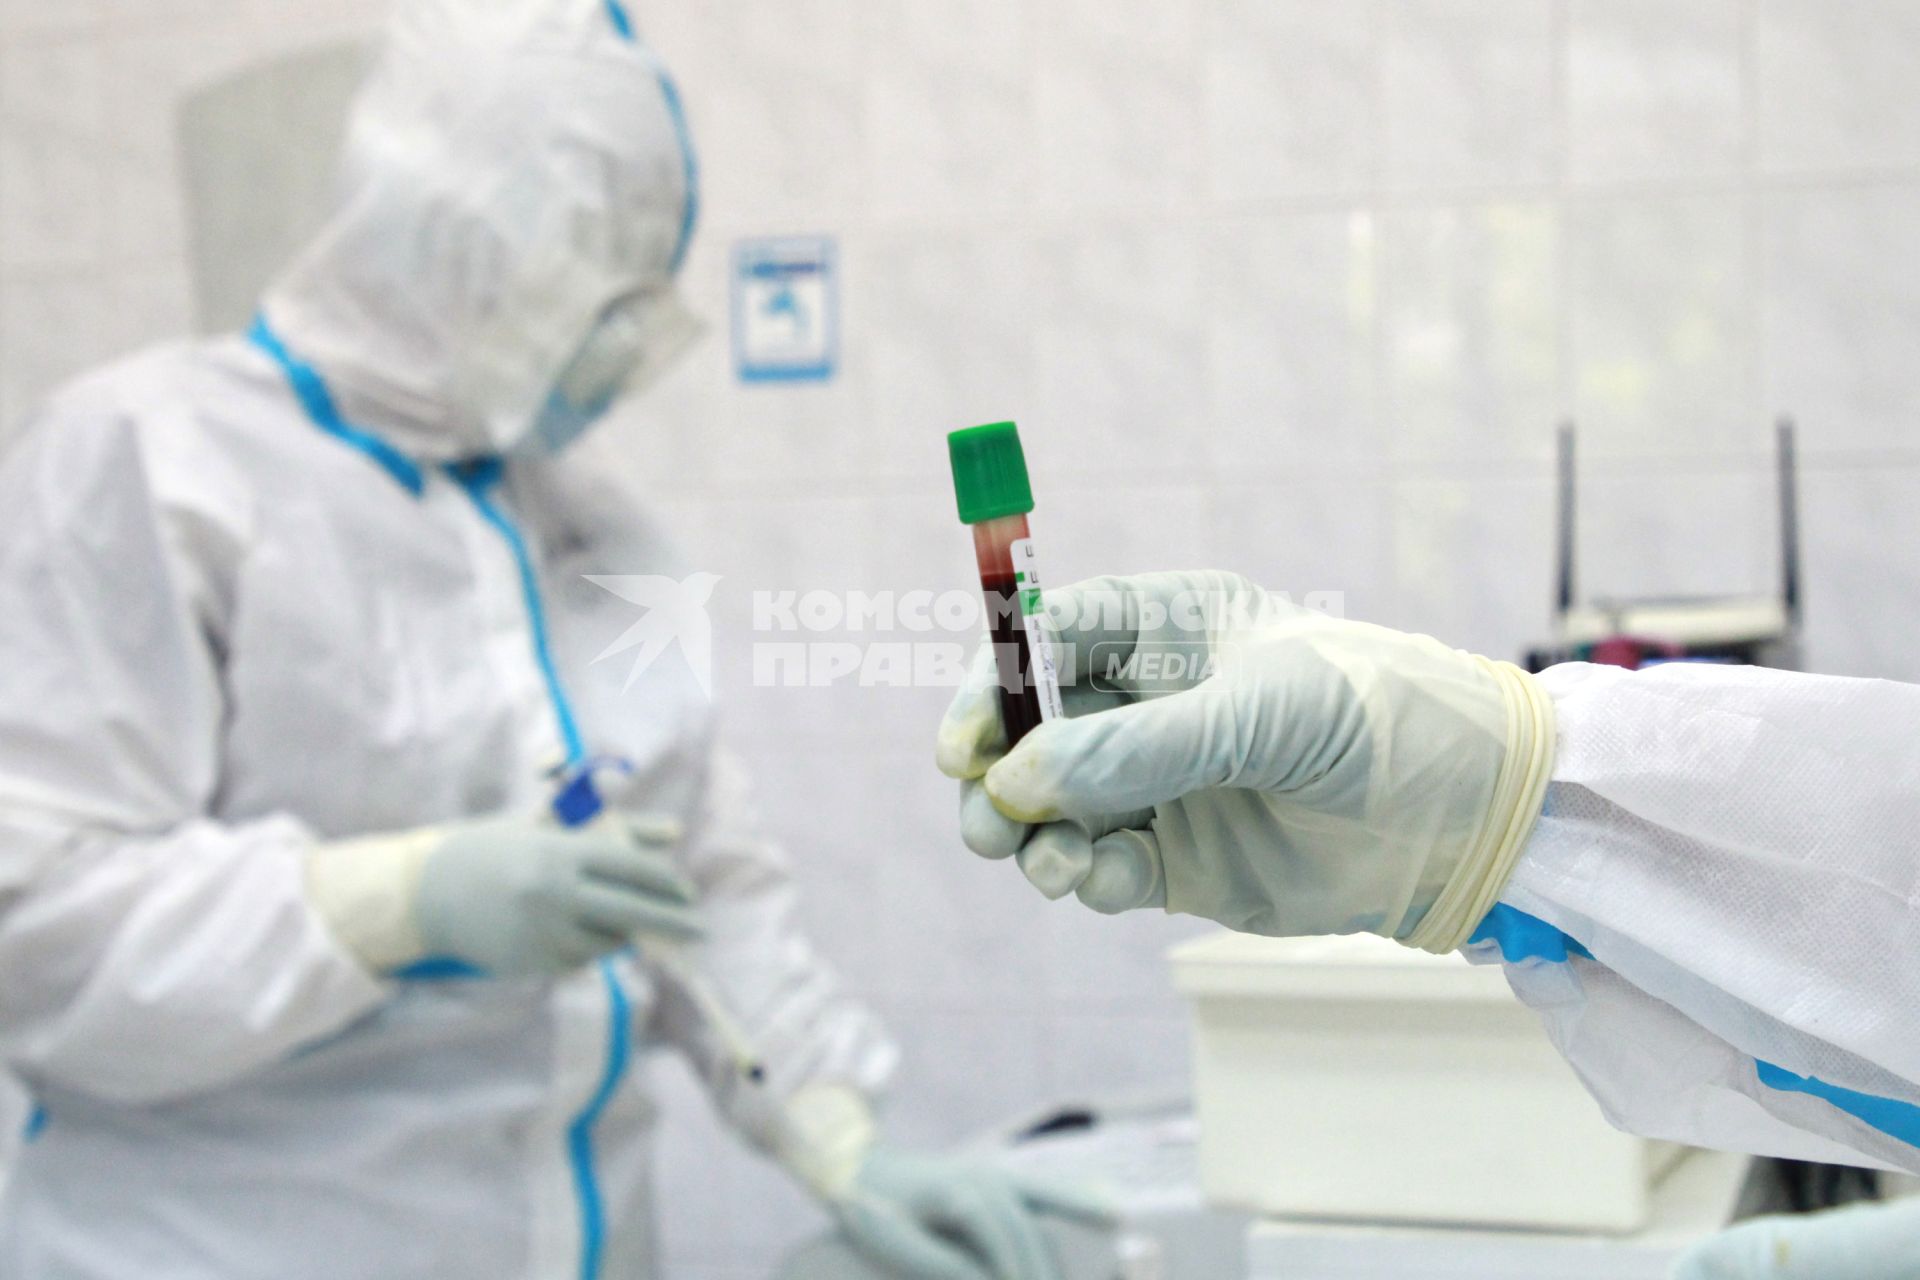 Иркутск. Городская клиническая больница №1. Отделение для зараженных коронавирусной инфекцией COVID-19. На снимке: сотрудник лаборатории держит в руках пробирку с биоматериалом.